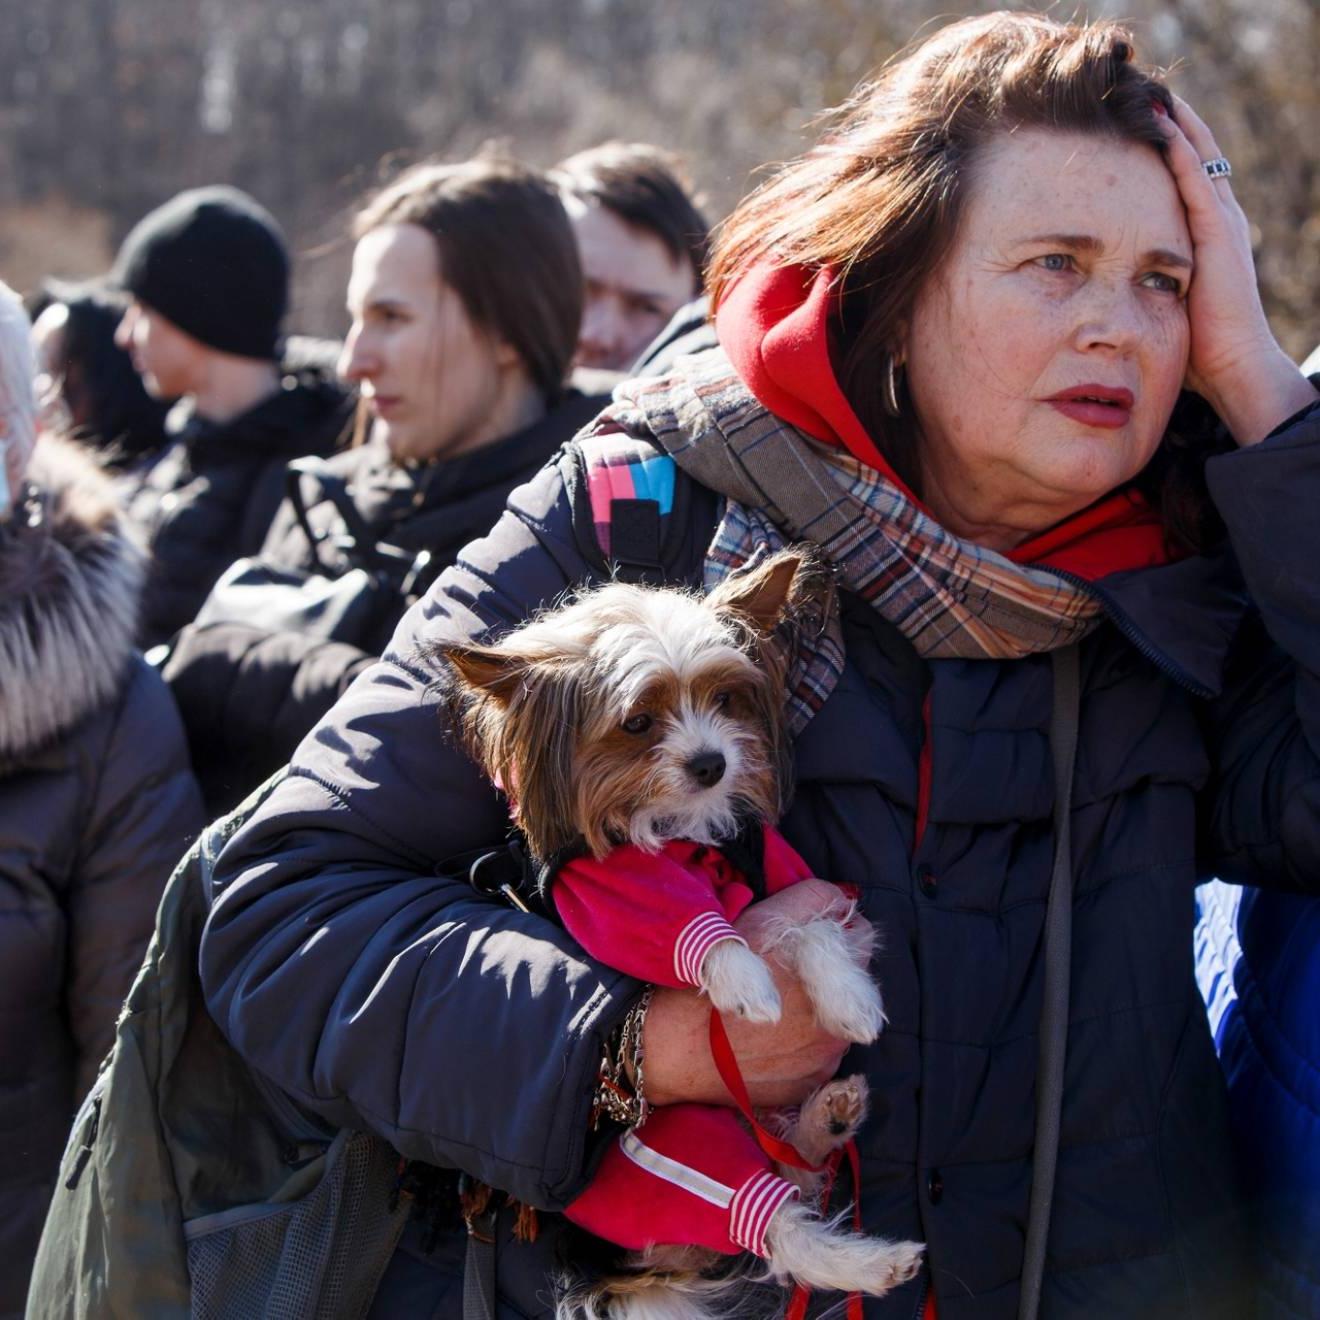 一群乌克兰难民穿着冬衣站在外面, 一位中年妇女抱着一只小狗在前面